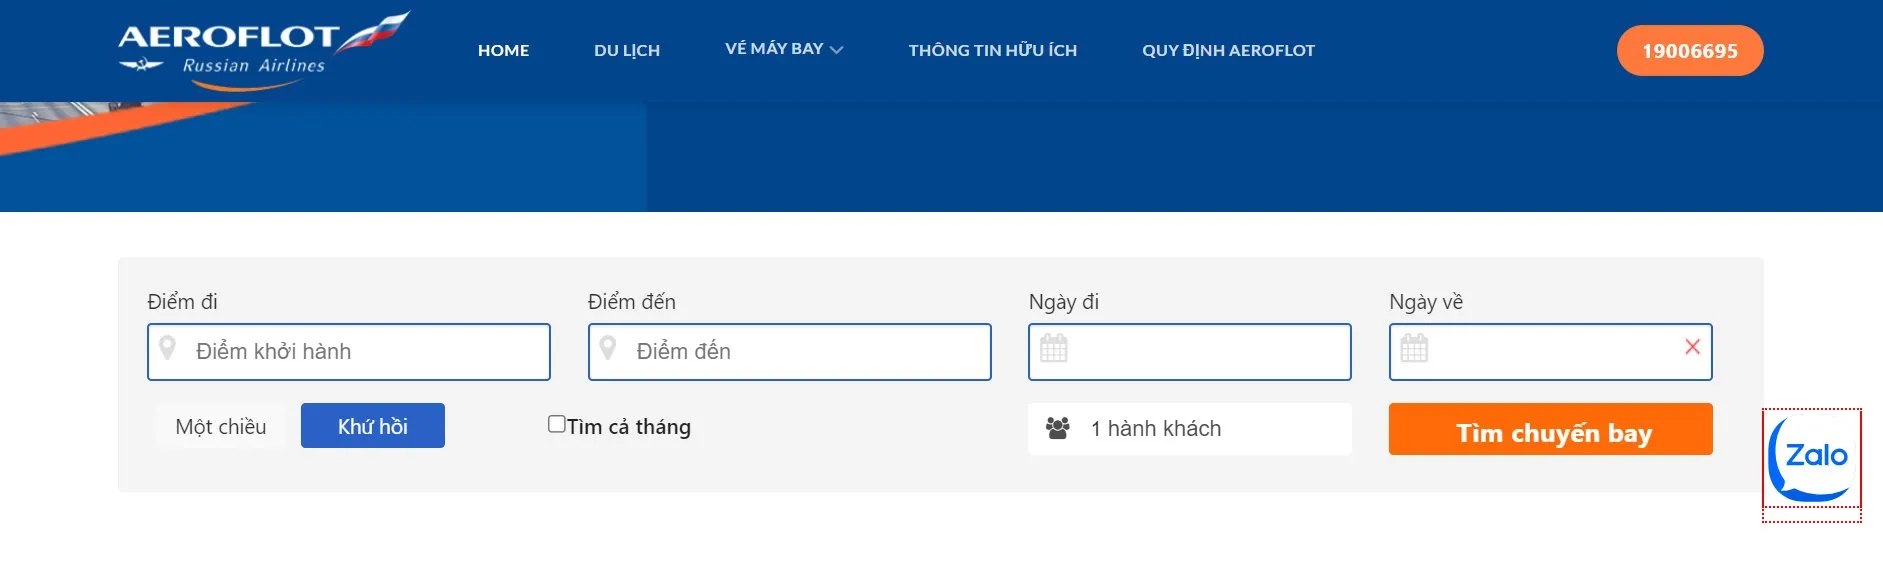 Dao diện đặt vé của website đại lý Aeroflot Việt Nam